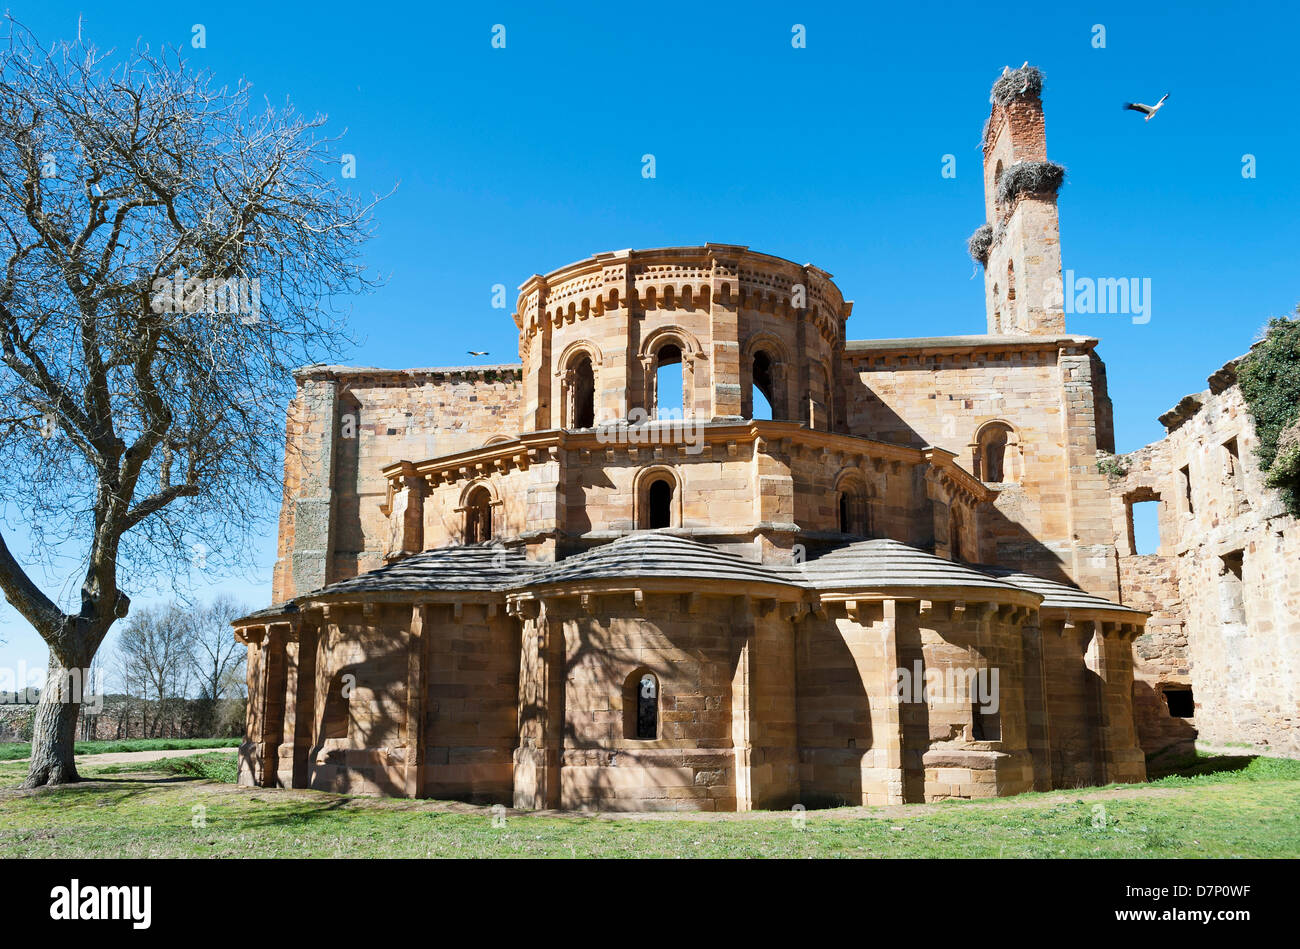 Ruins of the Cistercian monastery of Santa Maria de Moreruela, Zamora (Spain) Stock Photo